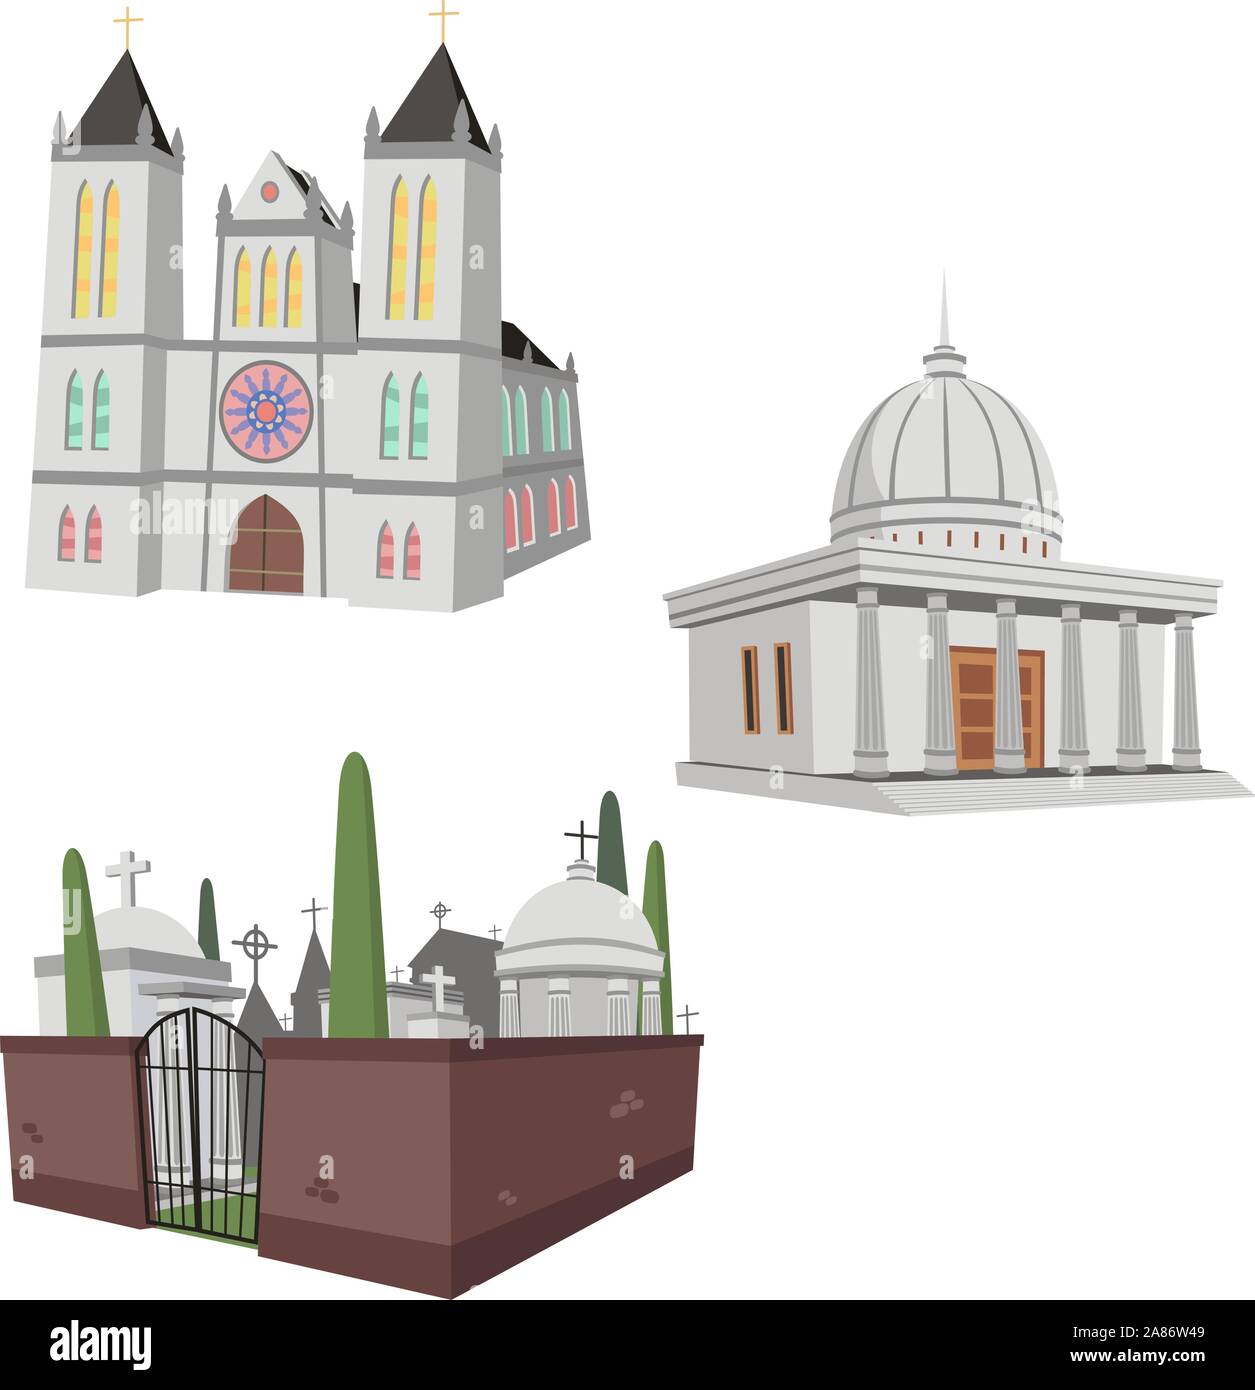 Abbildung: 3 Öffentliche Gebäude einschließlich einer Kathedrale, Friedhof und einer allgemeinen öffentlichen Bau. Stock Vektor